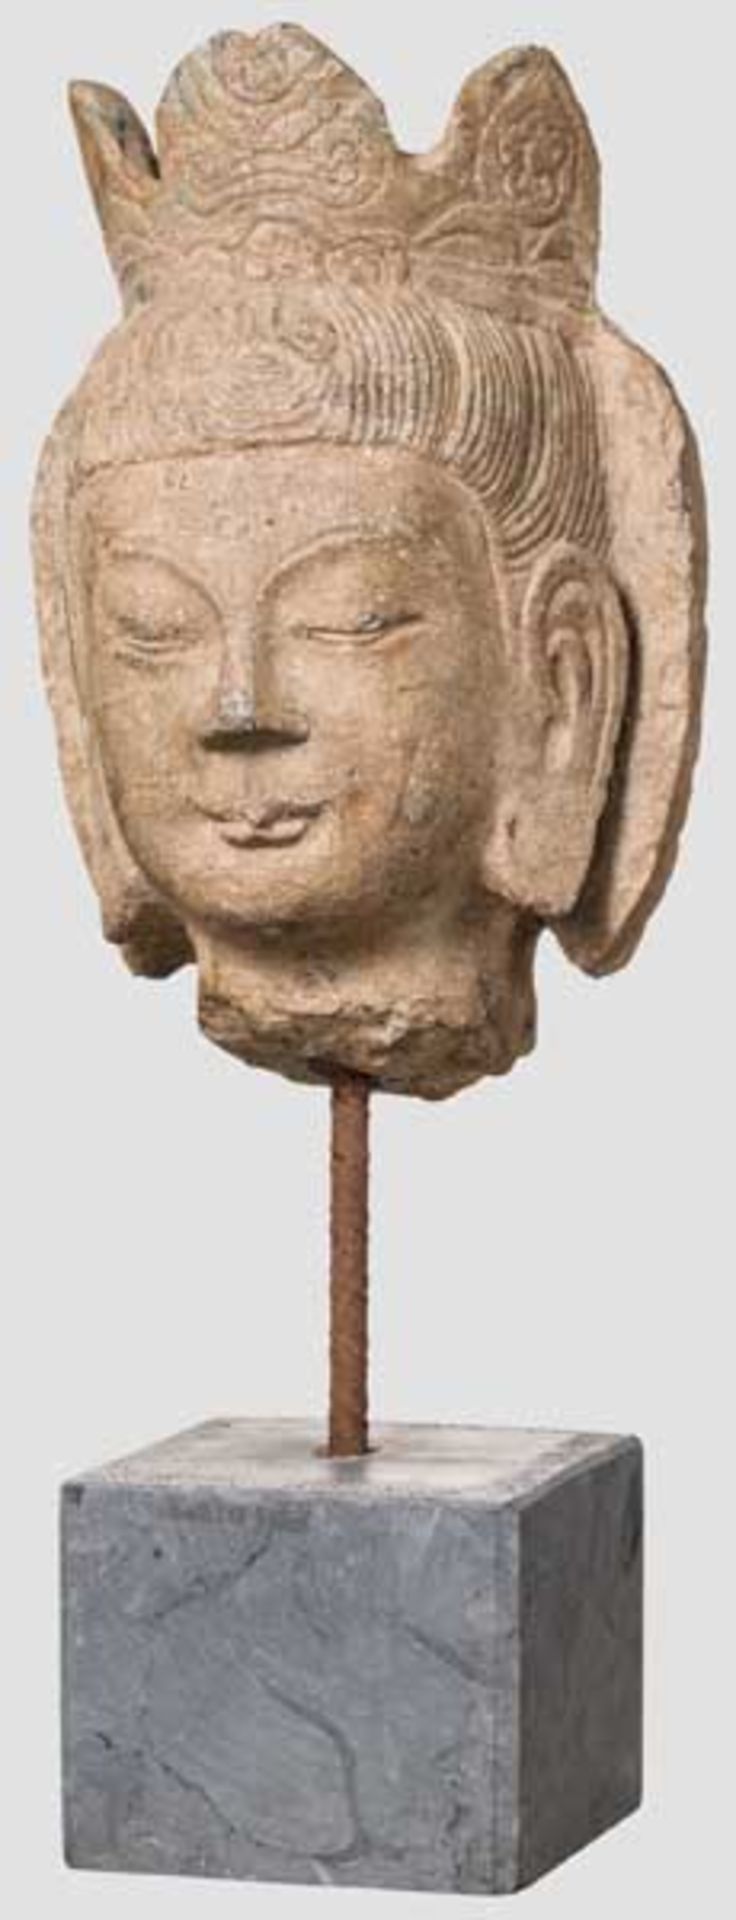 Kopf des Vajrasattva, Tibet, 20. Jhdt. Heller Stein, modern montiert auf Steinsockel. An der Krone